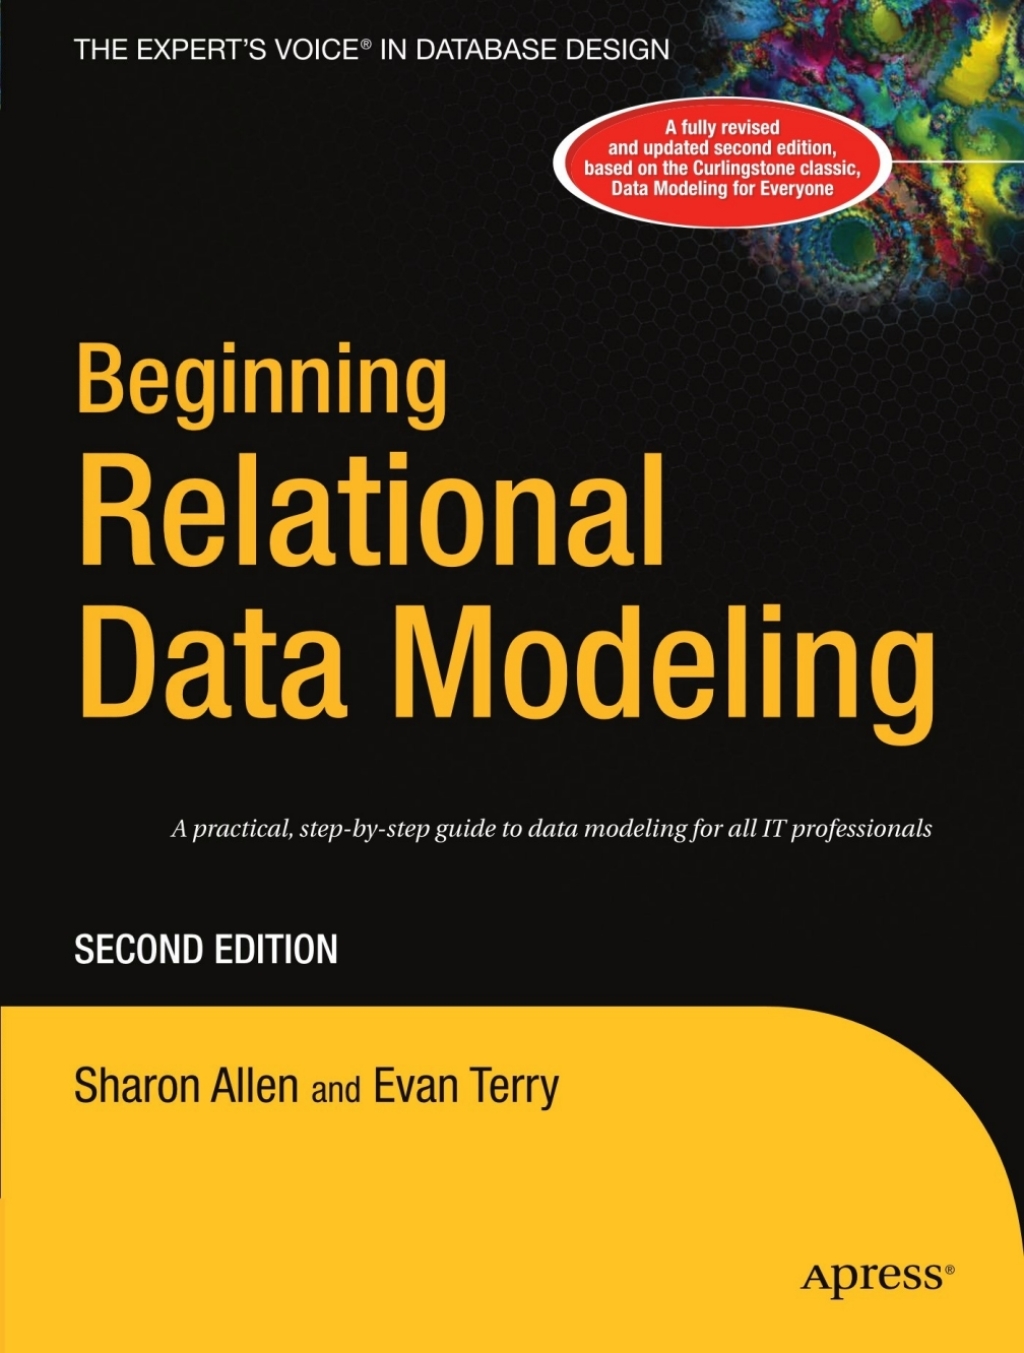 Beginning Relational Data Modeling (eBook) - Sharon Lee Allen; Evan Terry